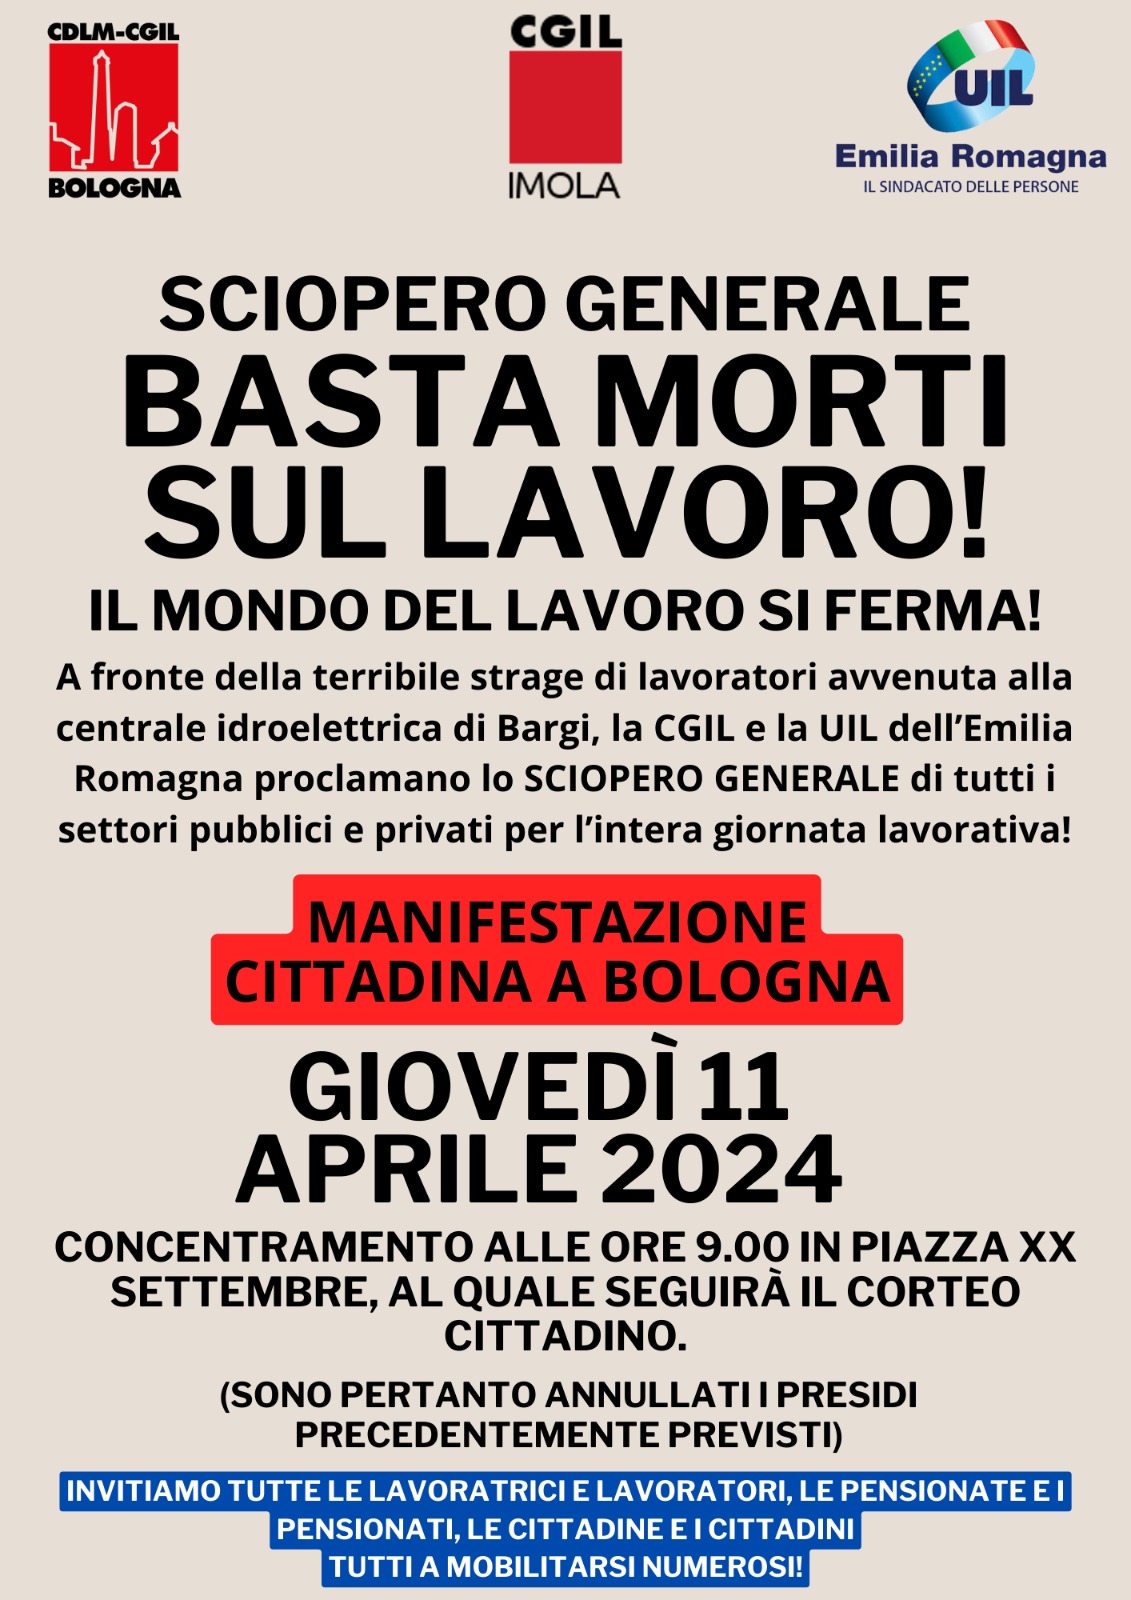 SCIOPERO GENERALE! ADESSO BASTA!  Domani 11 aprile manifestazione di Cgil Bologna e Uil Emilia-Romagna per dire basta alle morti sul lavoro